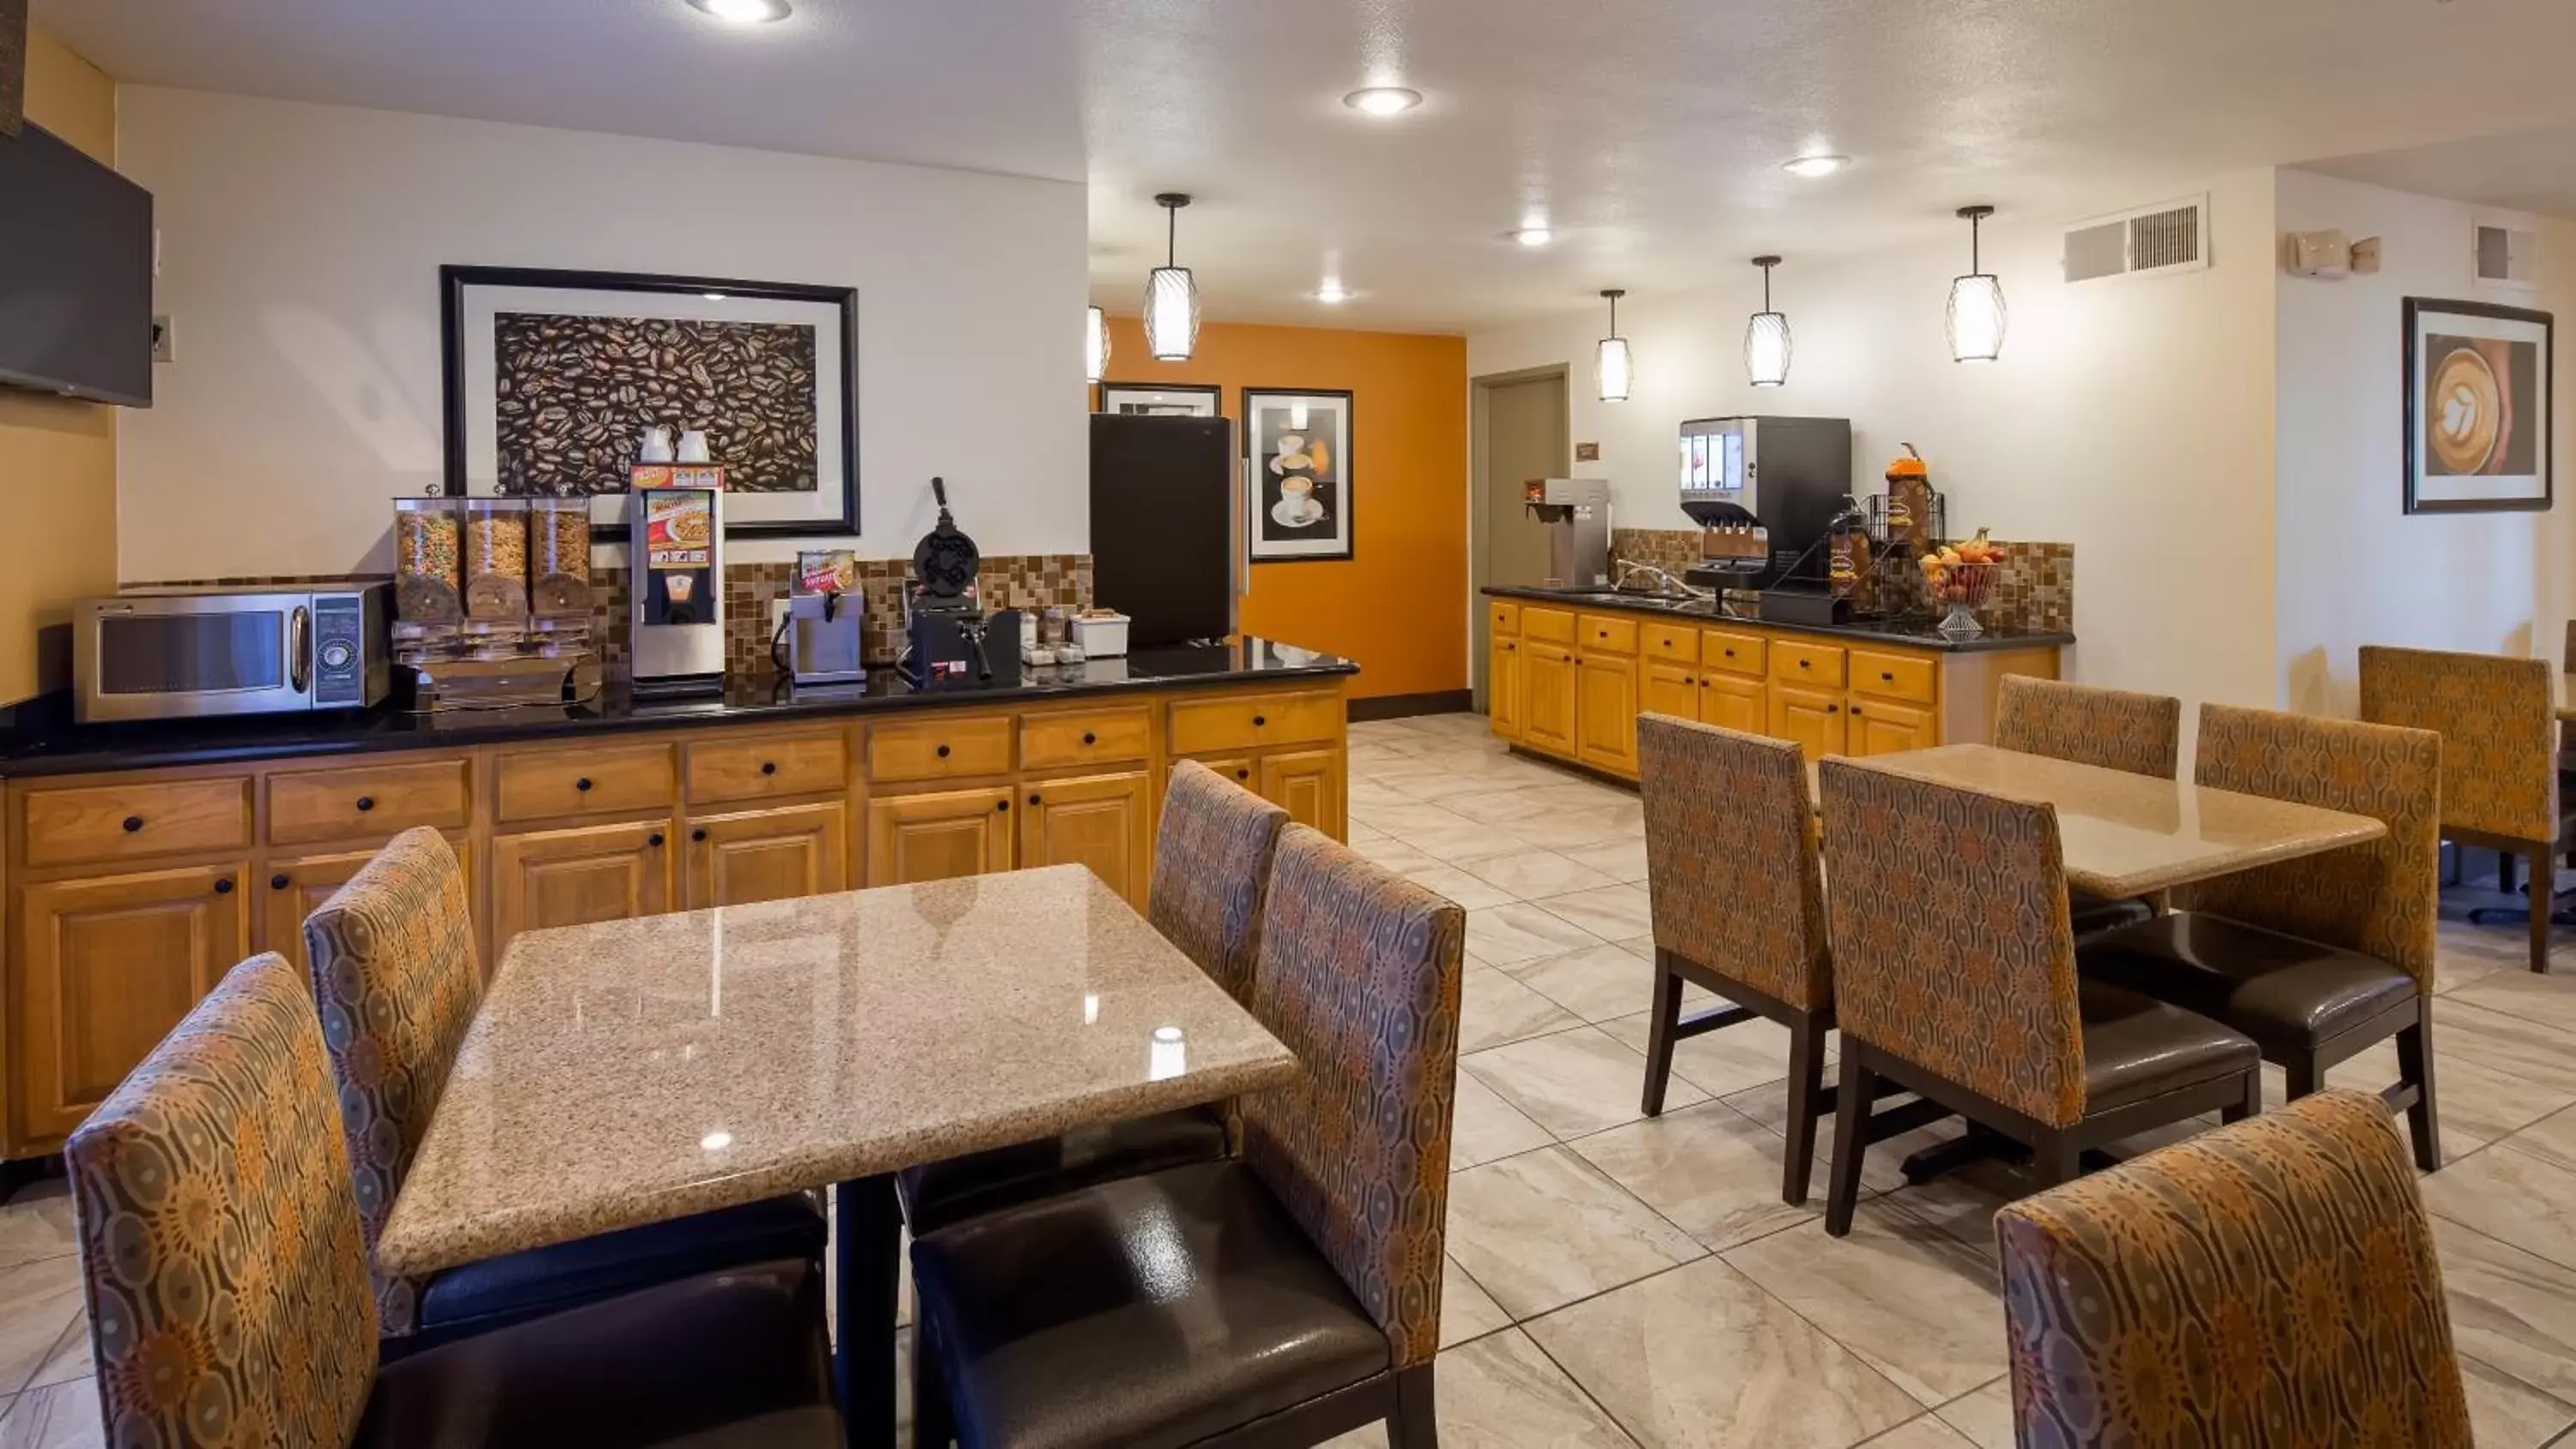 Buffet breakfast, Restaurant/Places to Eat in Best Western East El Paso Inn